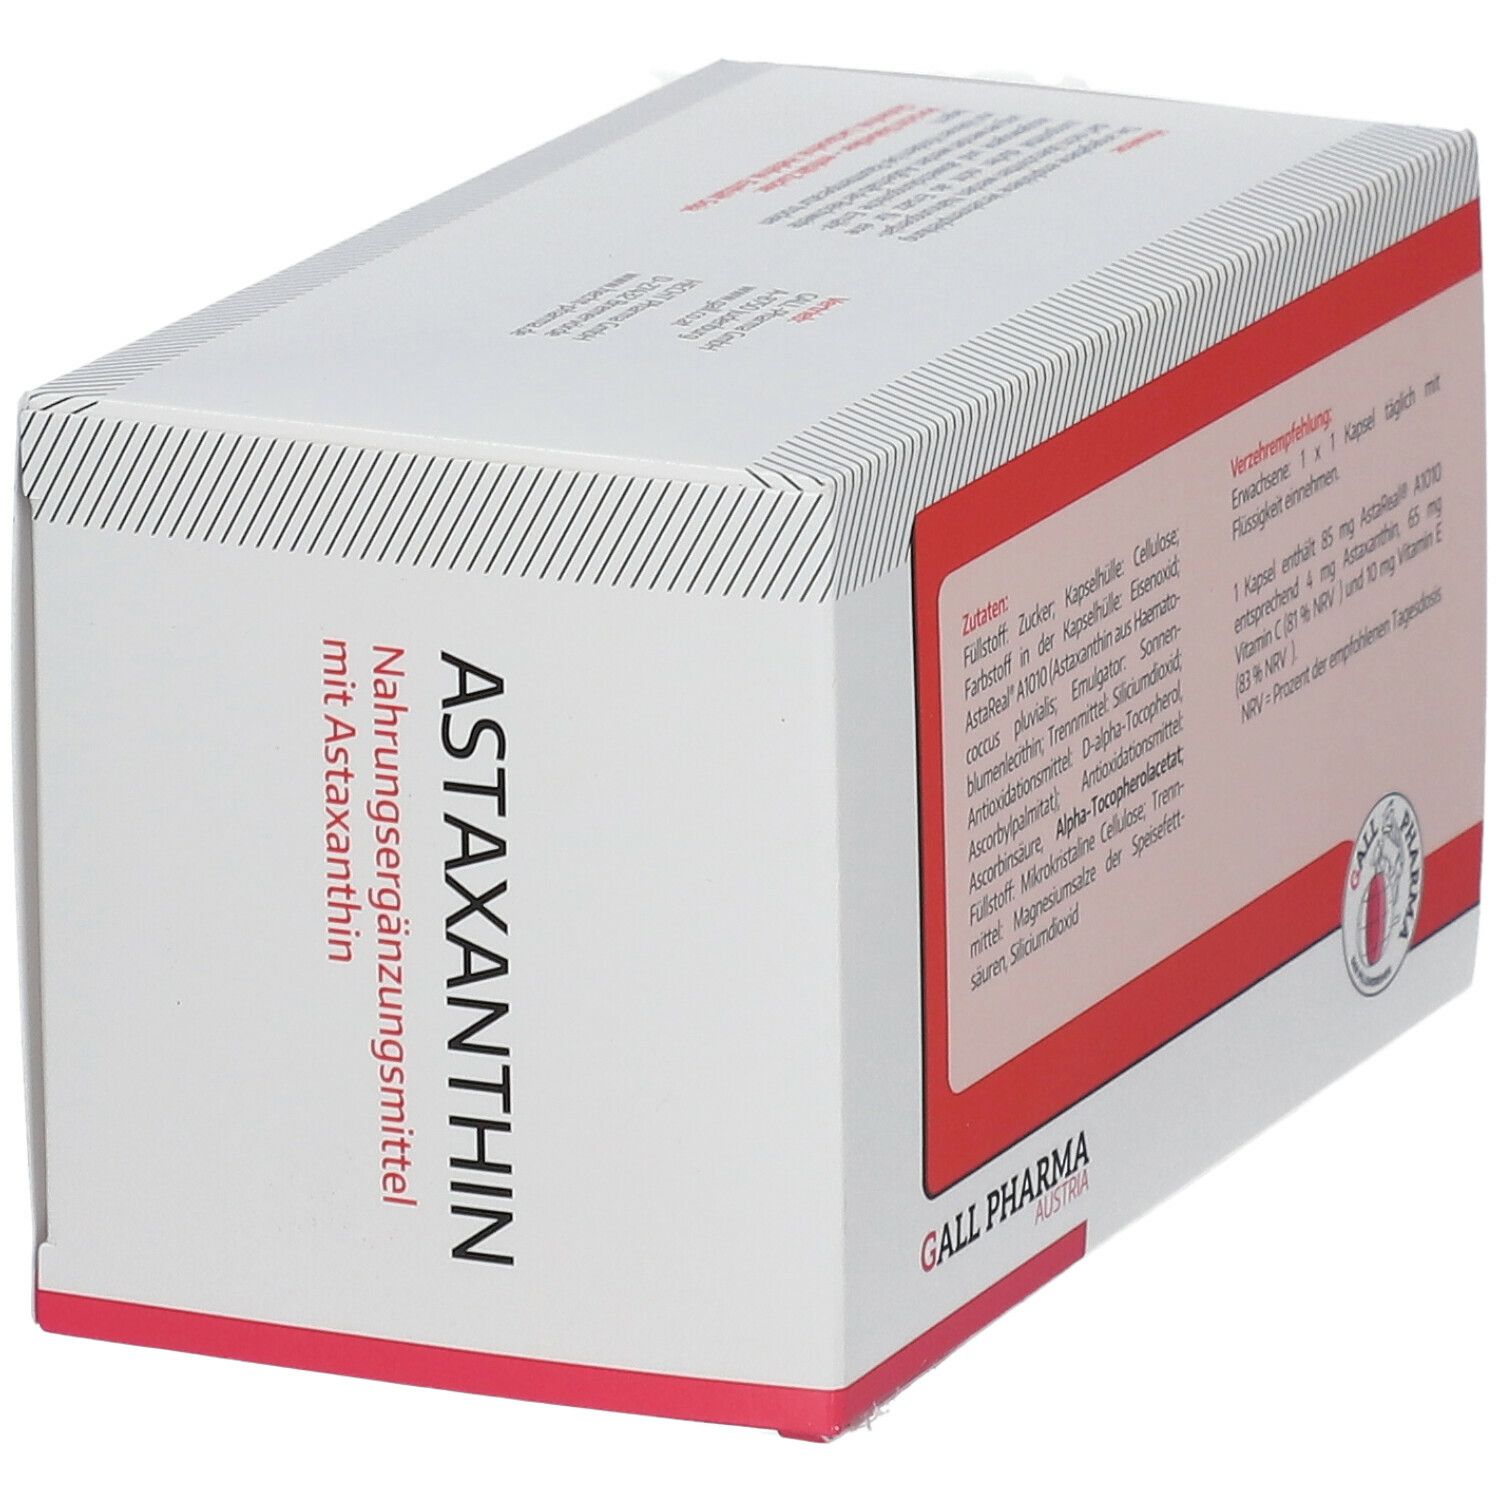 GALL PHARMA Astaxanthin 4 mg GPH